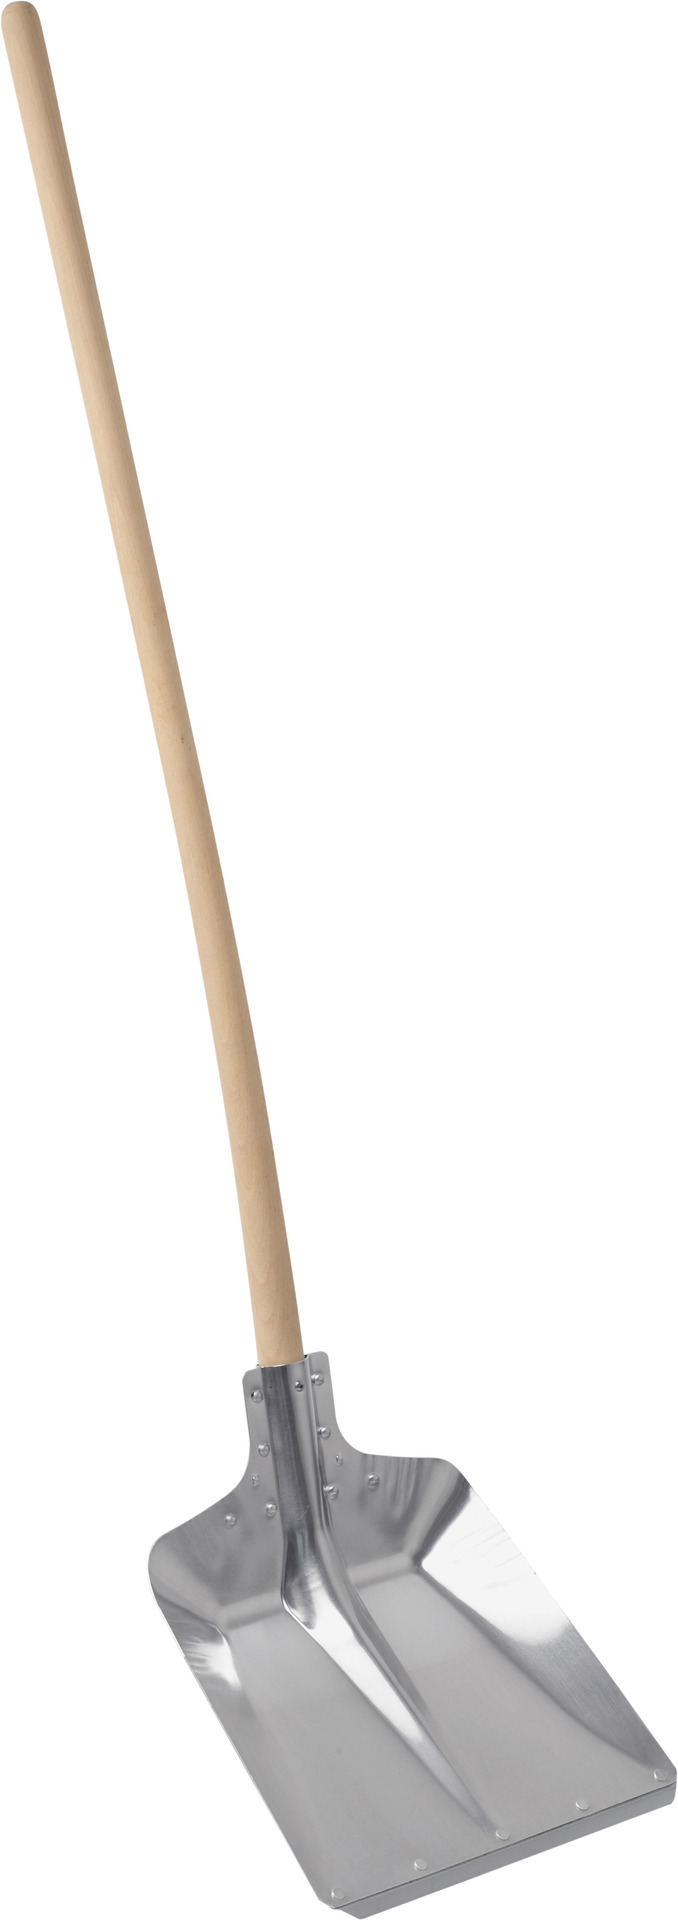 Alu-Randschaufel mit Buchen-Stiel 130cm